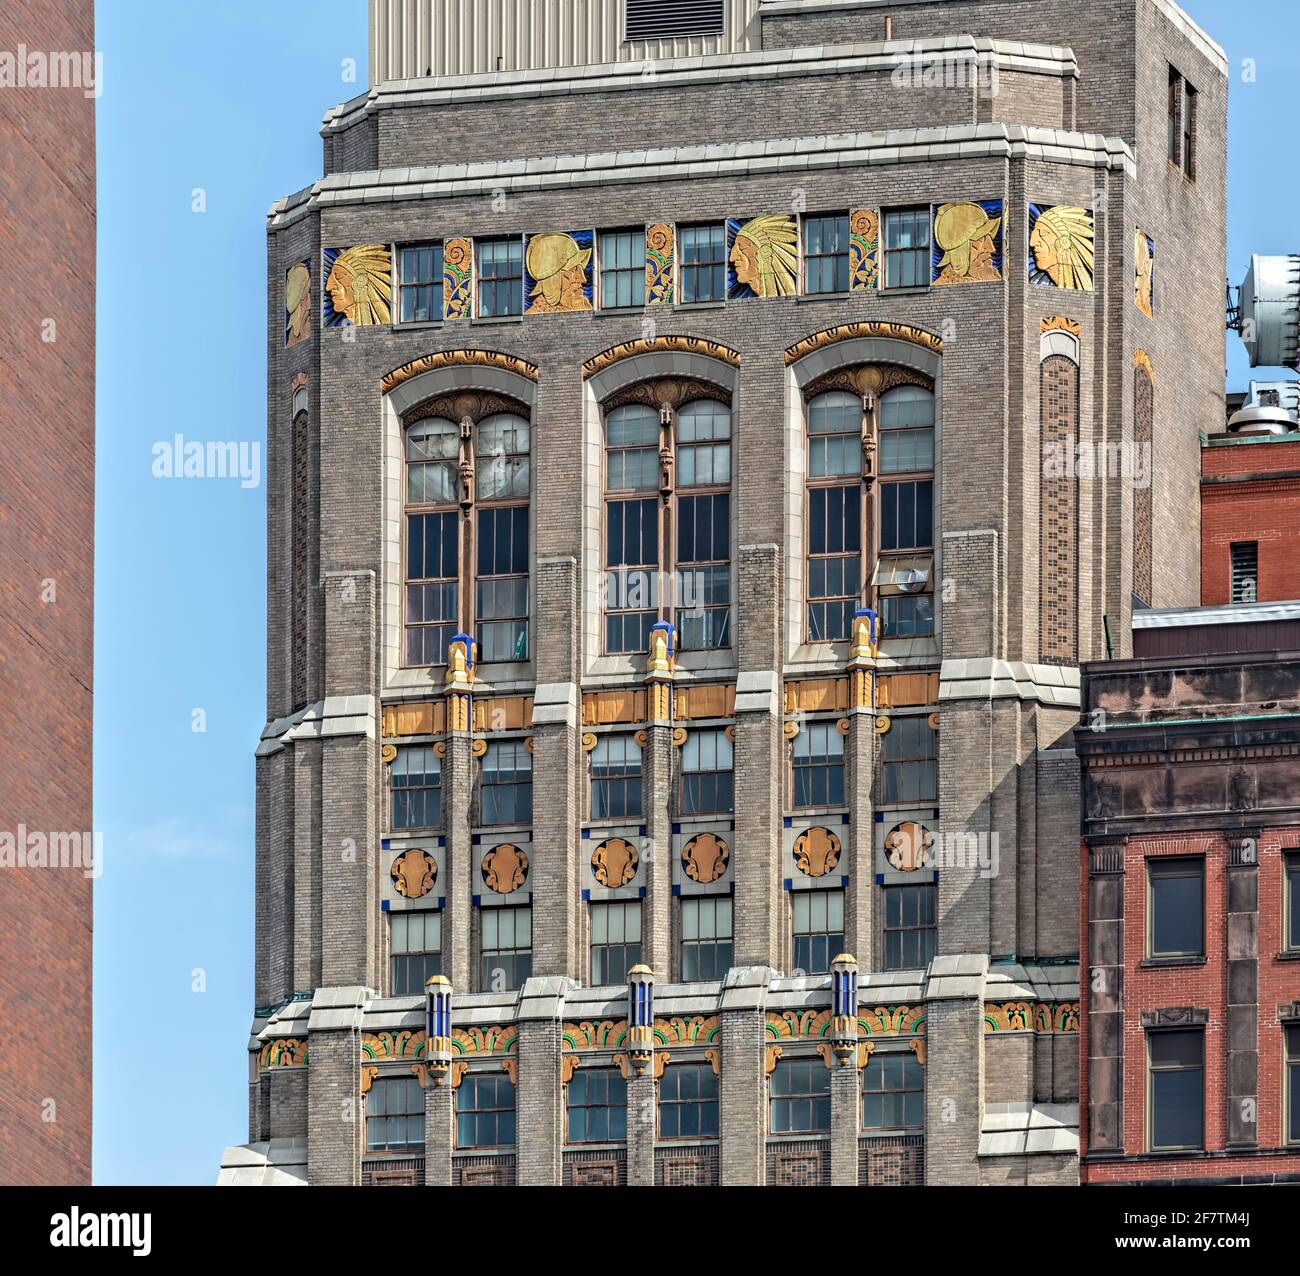 Maison Savings Bank Building, point de repère art déco au 11 North Pearl Street dans le quartier historique du centre-ville d'Albany. Banque D'Images